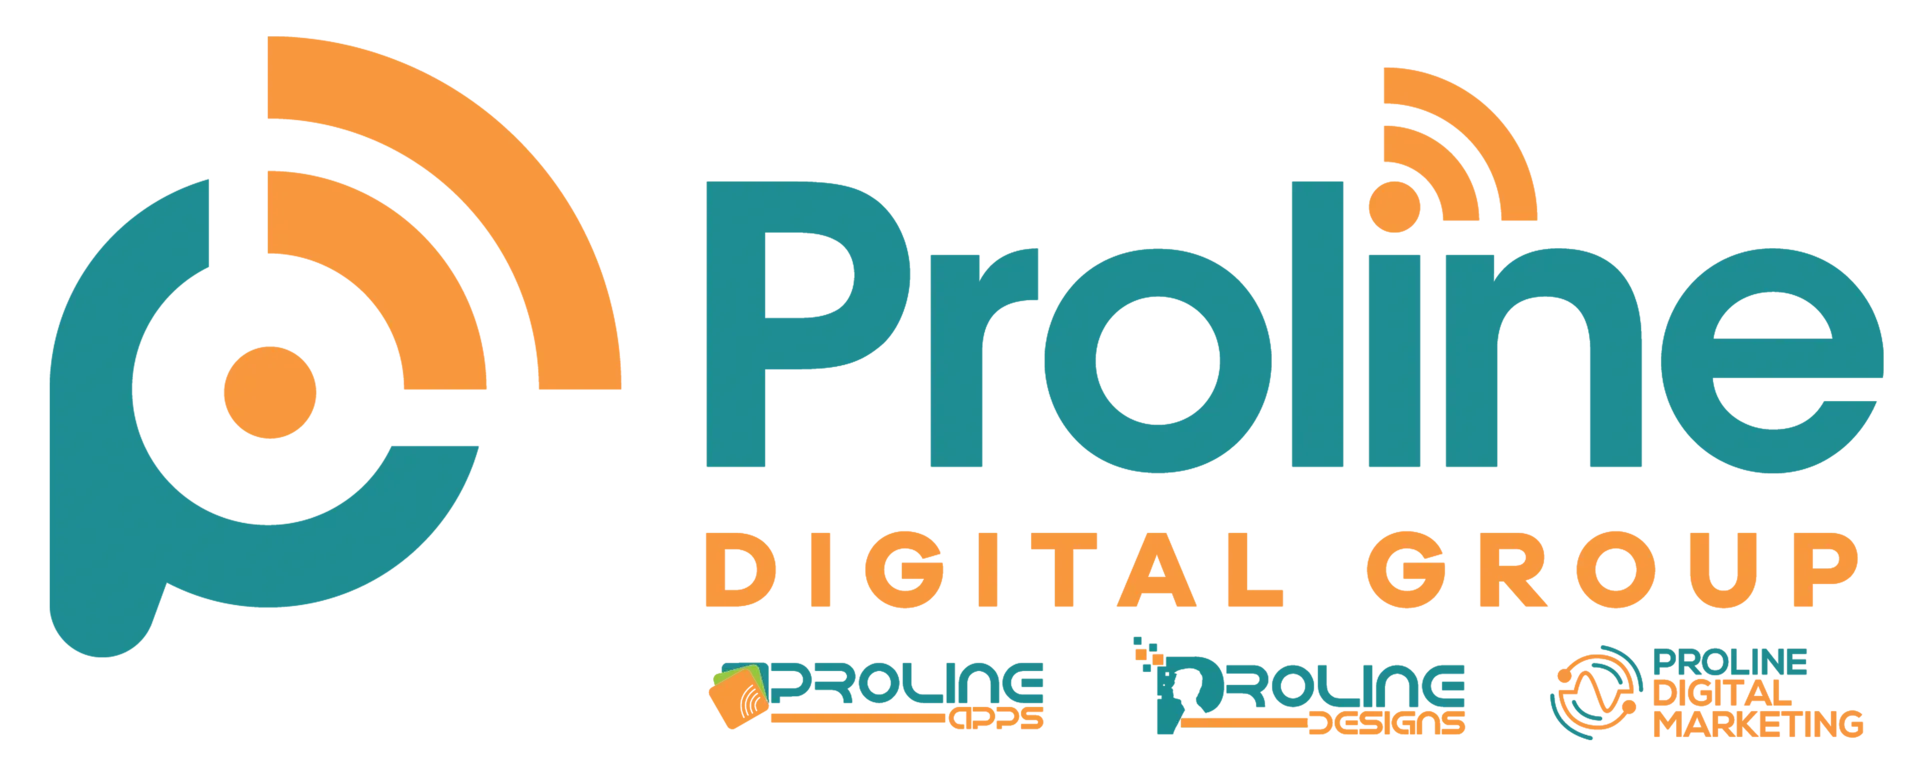 Proline Digital Group